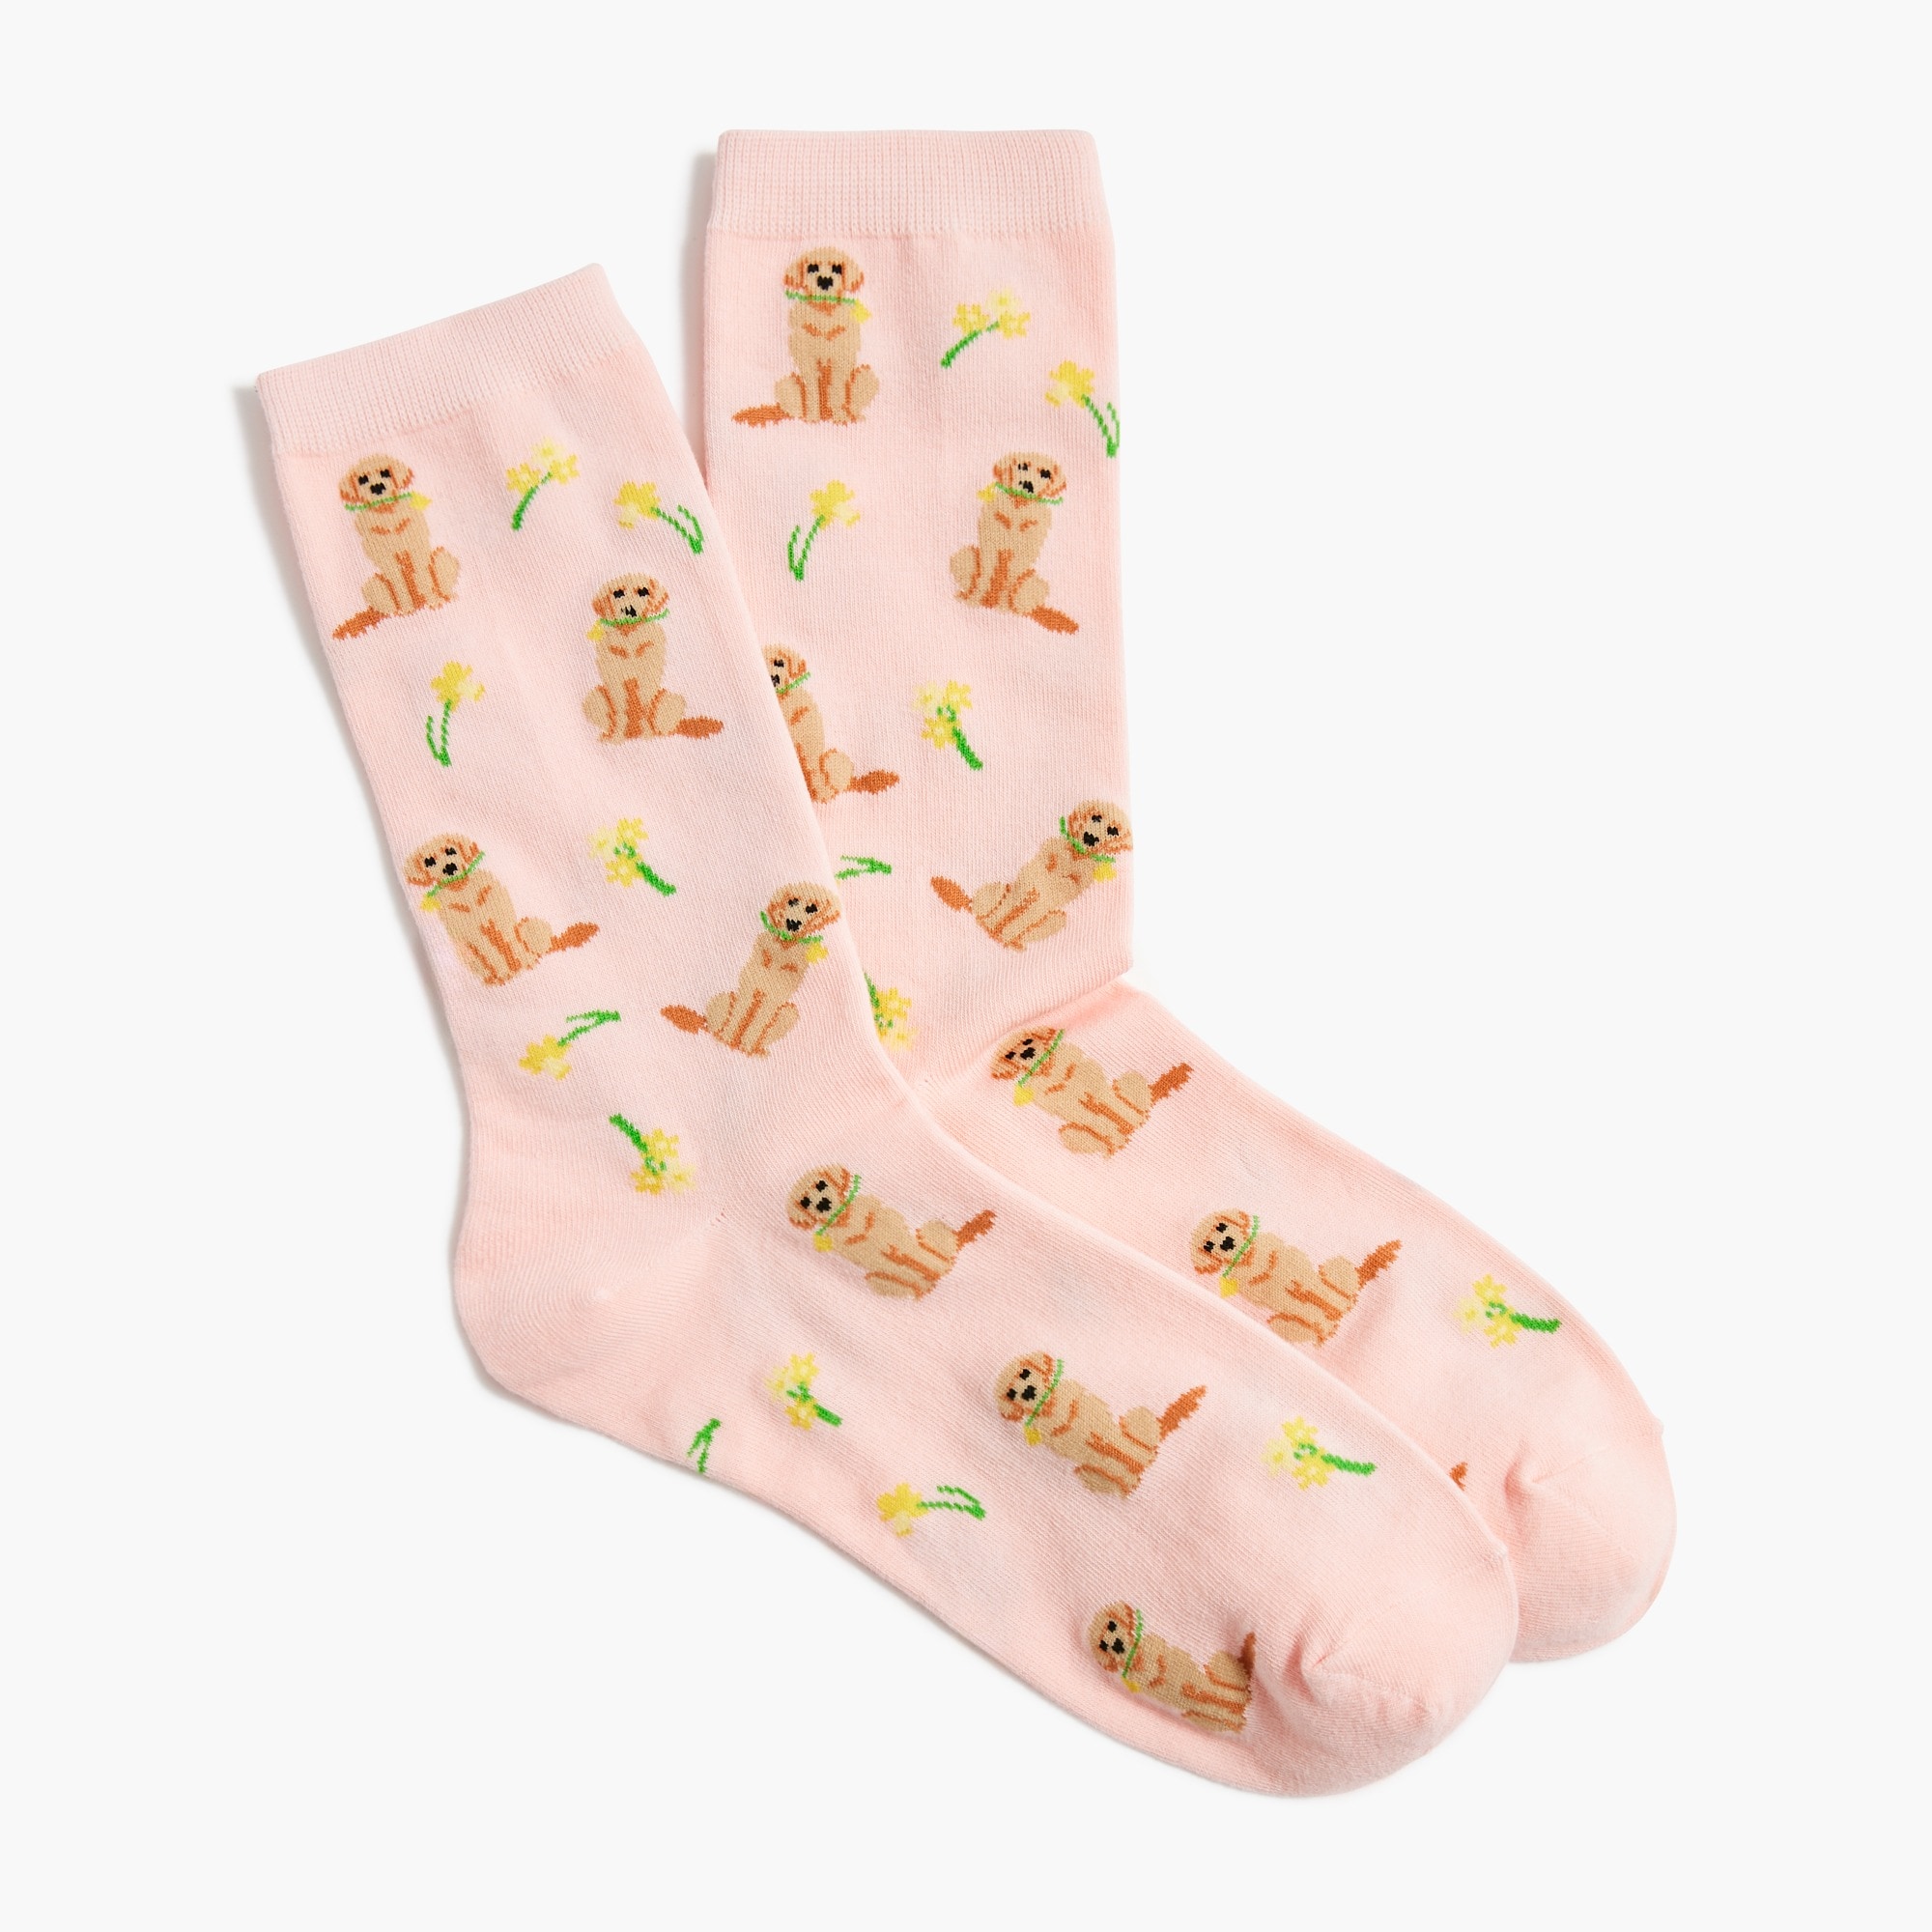 Flower dog trouser socks